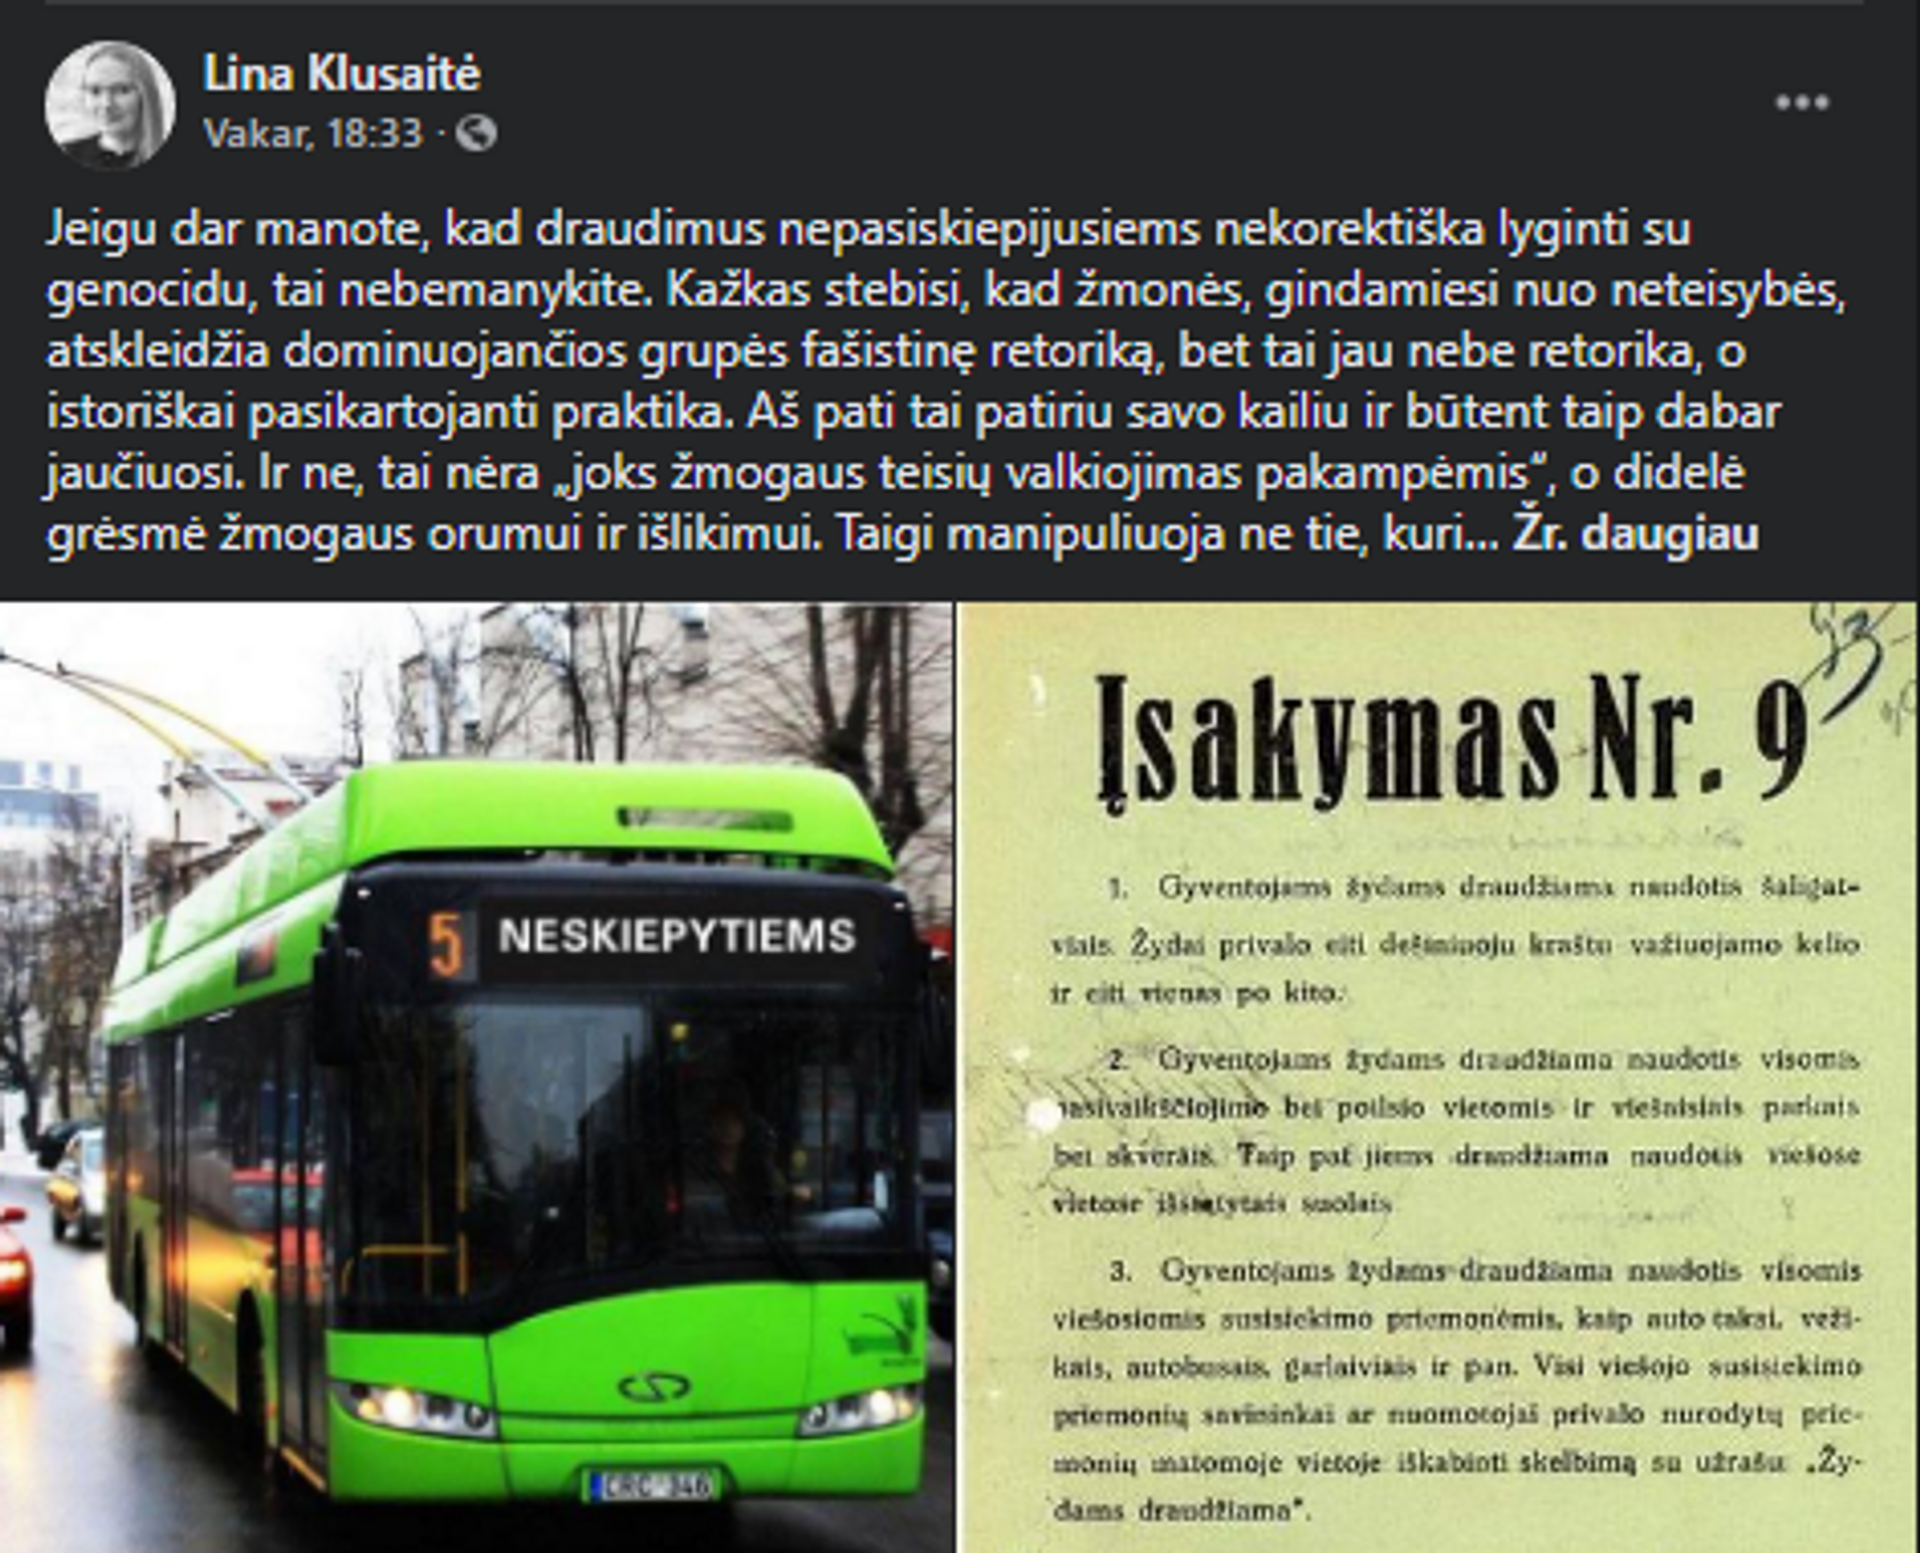 Autobusas nepaskiepytiems 1 - Sputnik Lietuva, 1920, 12.08.2021